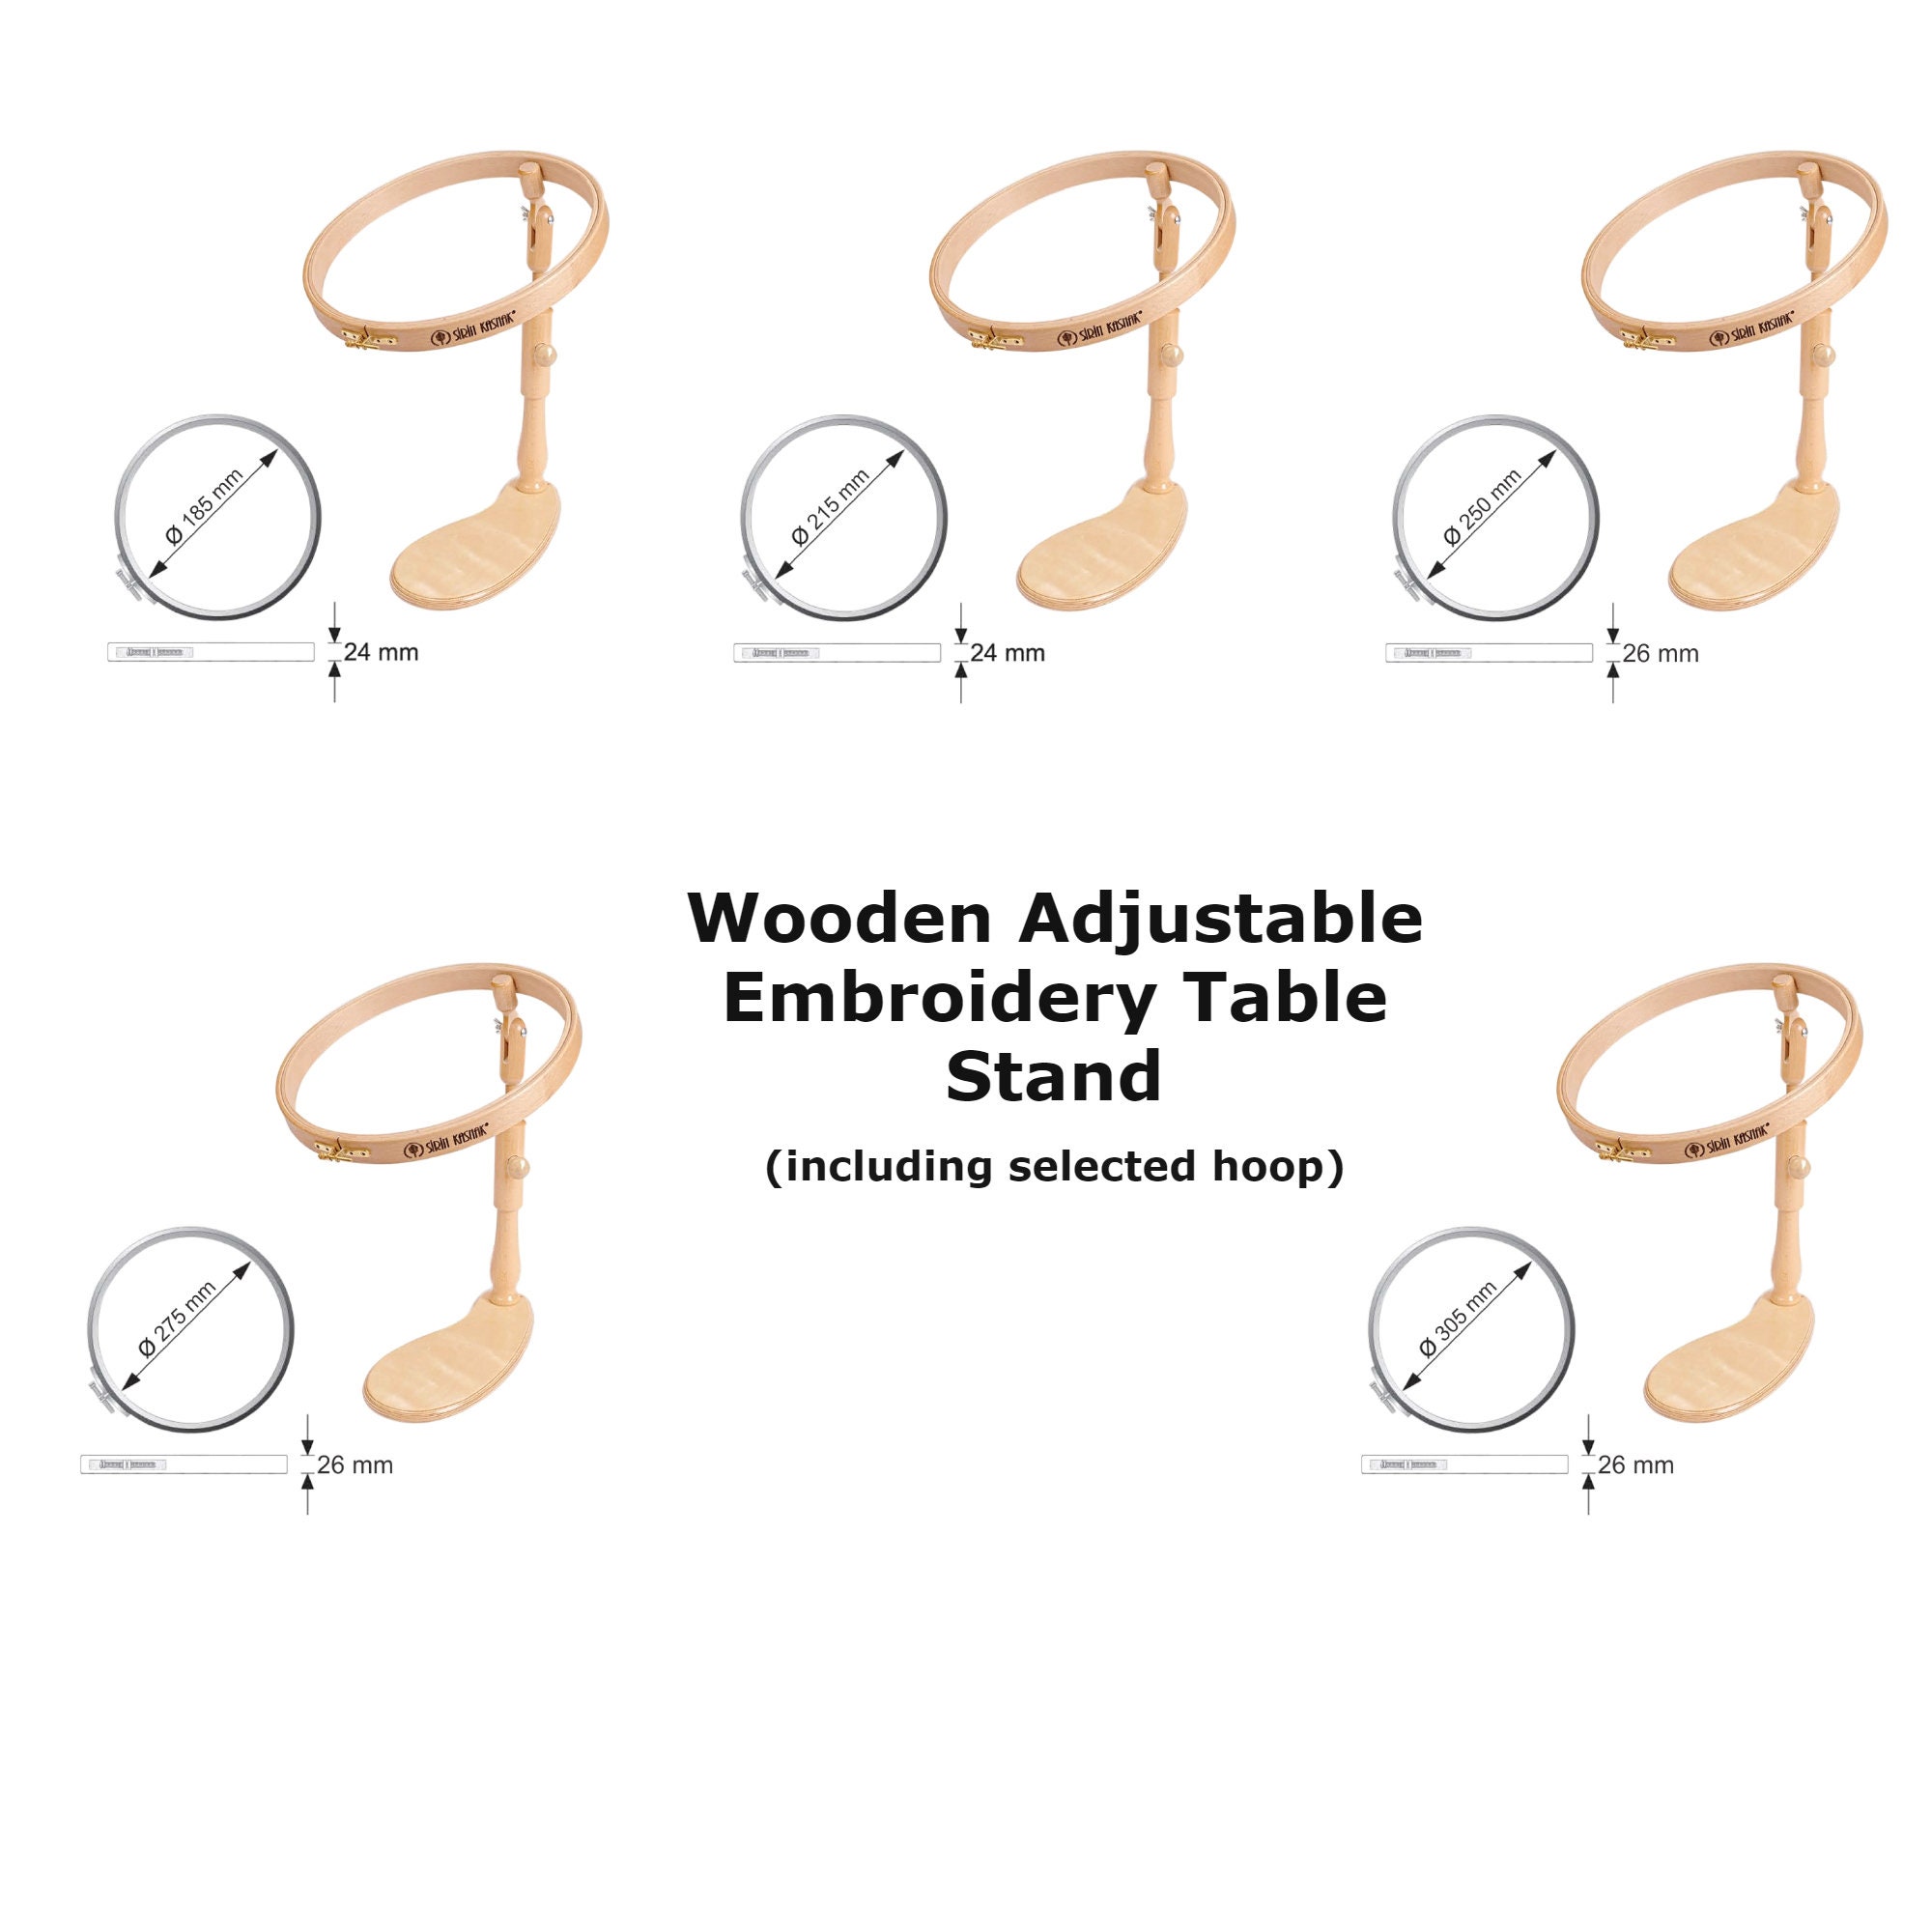 Nurge Wooden Embroidery Hoop Stand, Adjustable Embroidery Table Stand,  Cross Stitch Stand, Embroidery Hoop Holder, Nurge 190-5 